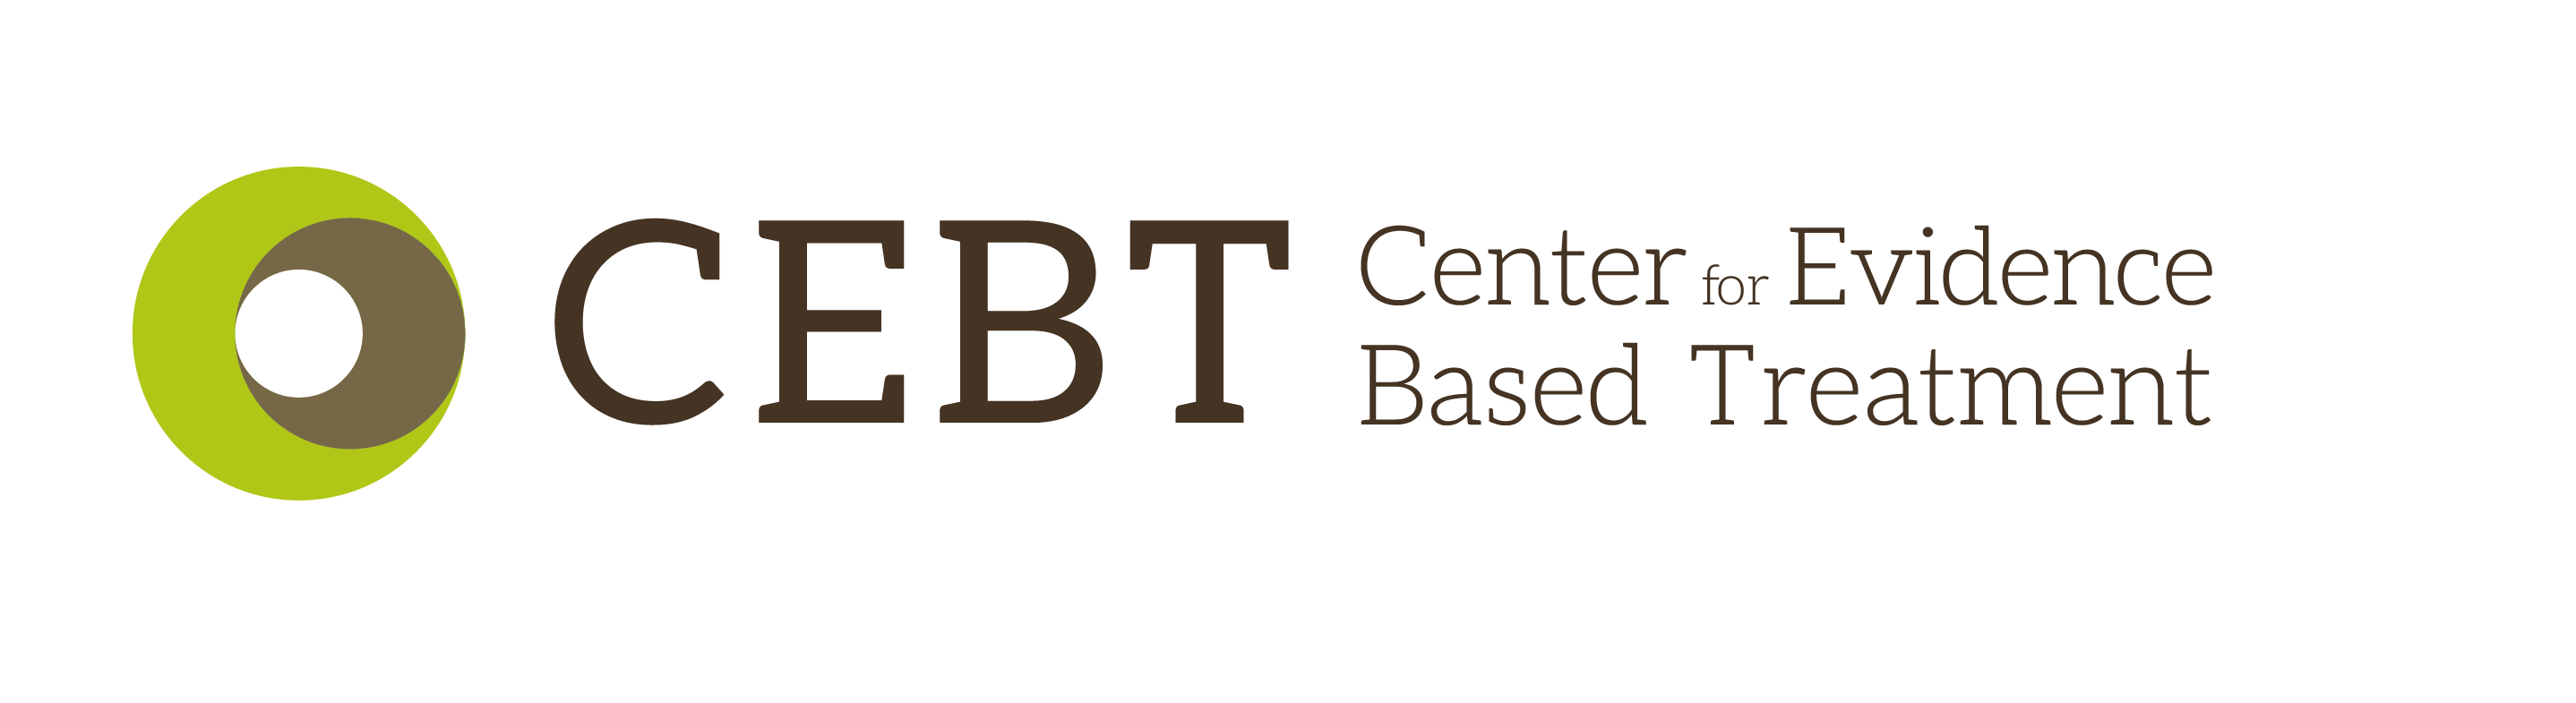 Center for Evidence Based Treatment logo